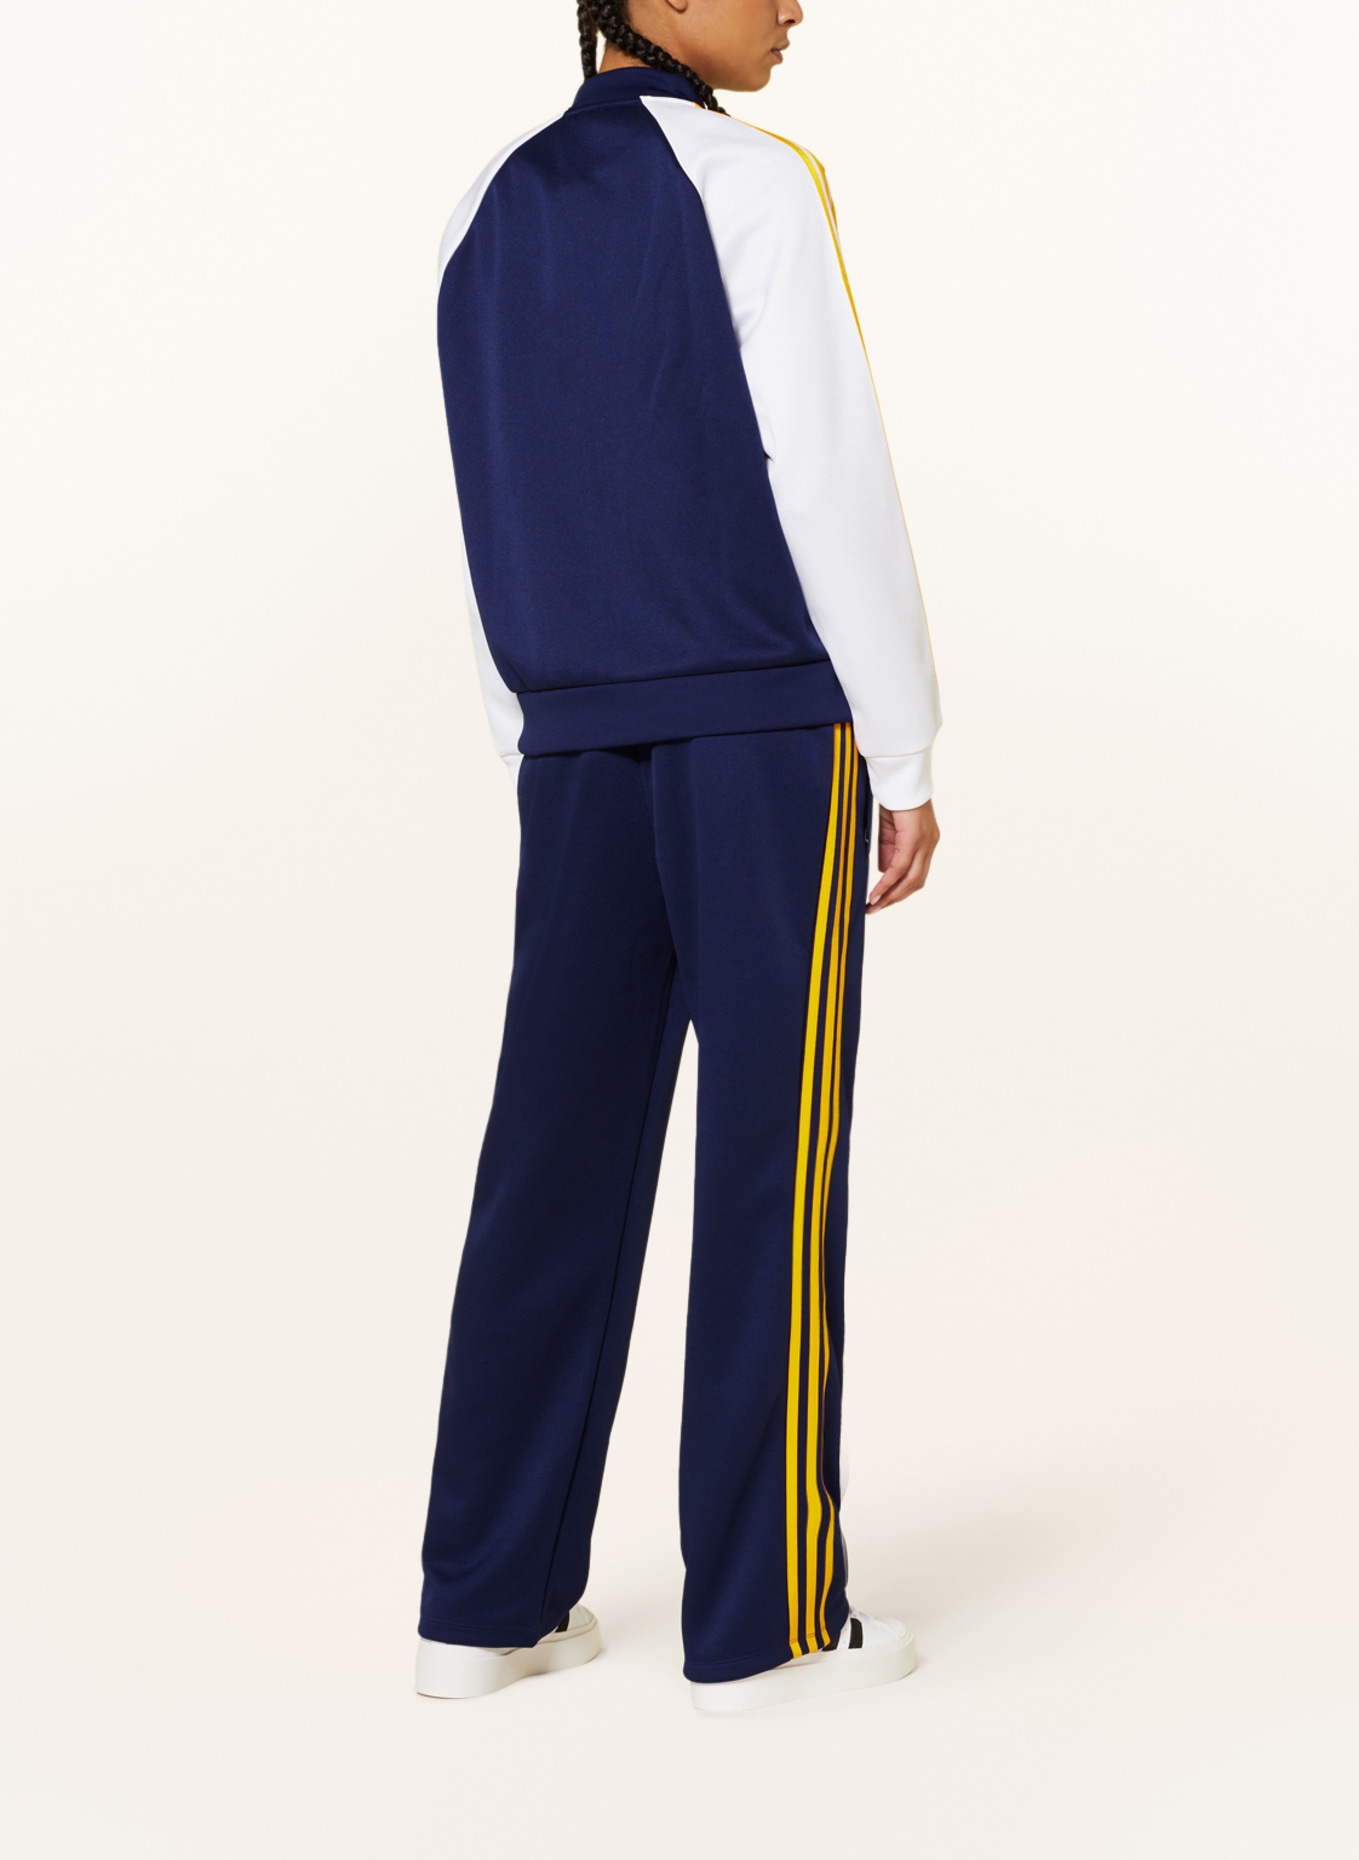 Training adidas OVERSIZED white SST ADICOLOR jacket blue/ CLASSICS Originals in dark